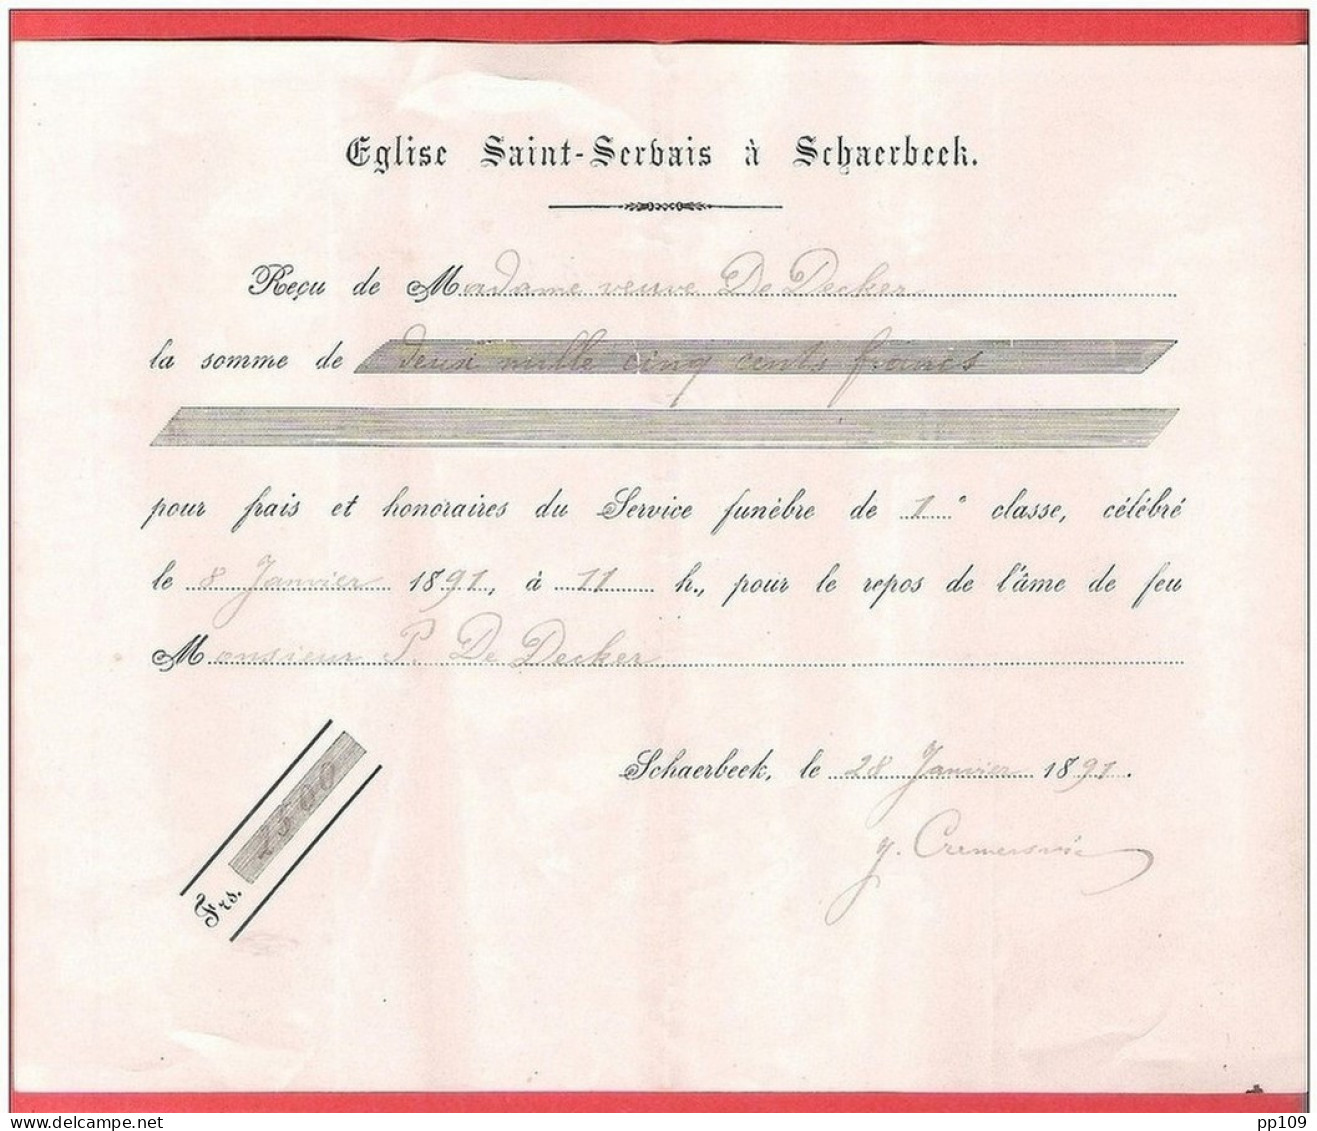 SCHAERBEEK  Eglise SAINT SERVAIS  Reçu Pour Frais De Service Funèbre  1891 - Dokumente